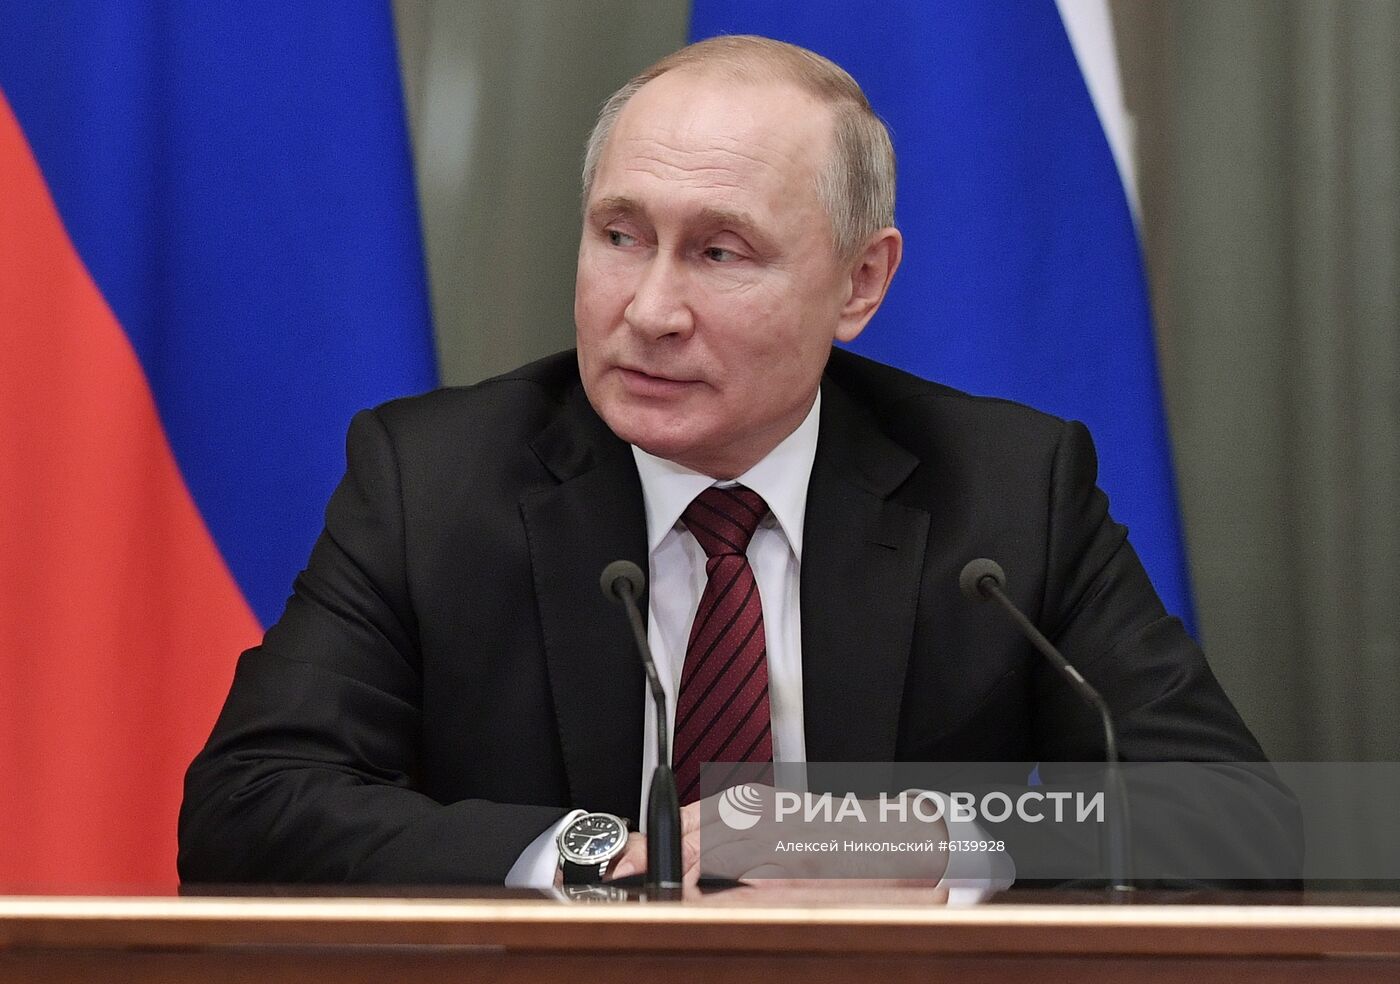 Президент РФ В. Путин провел встречу с новым правительством РФ